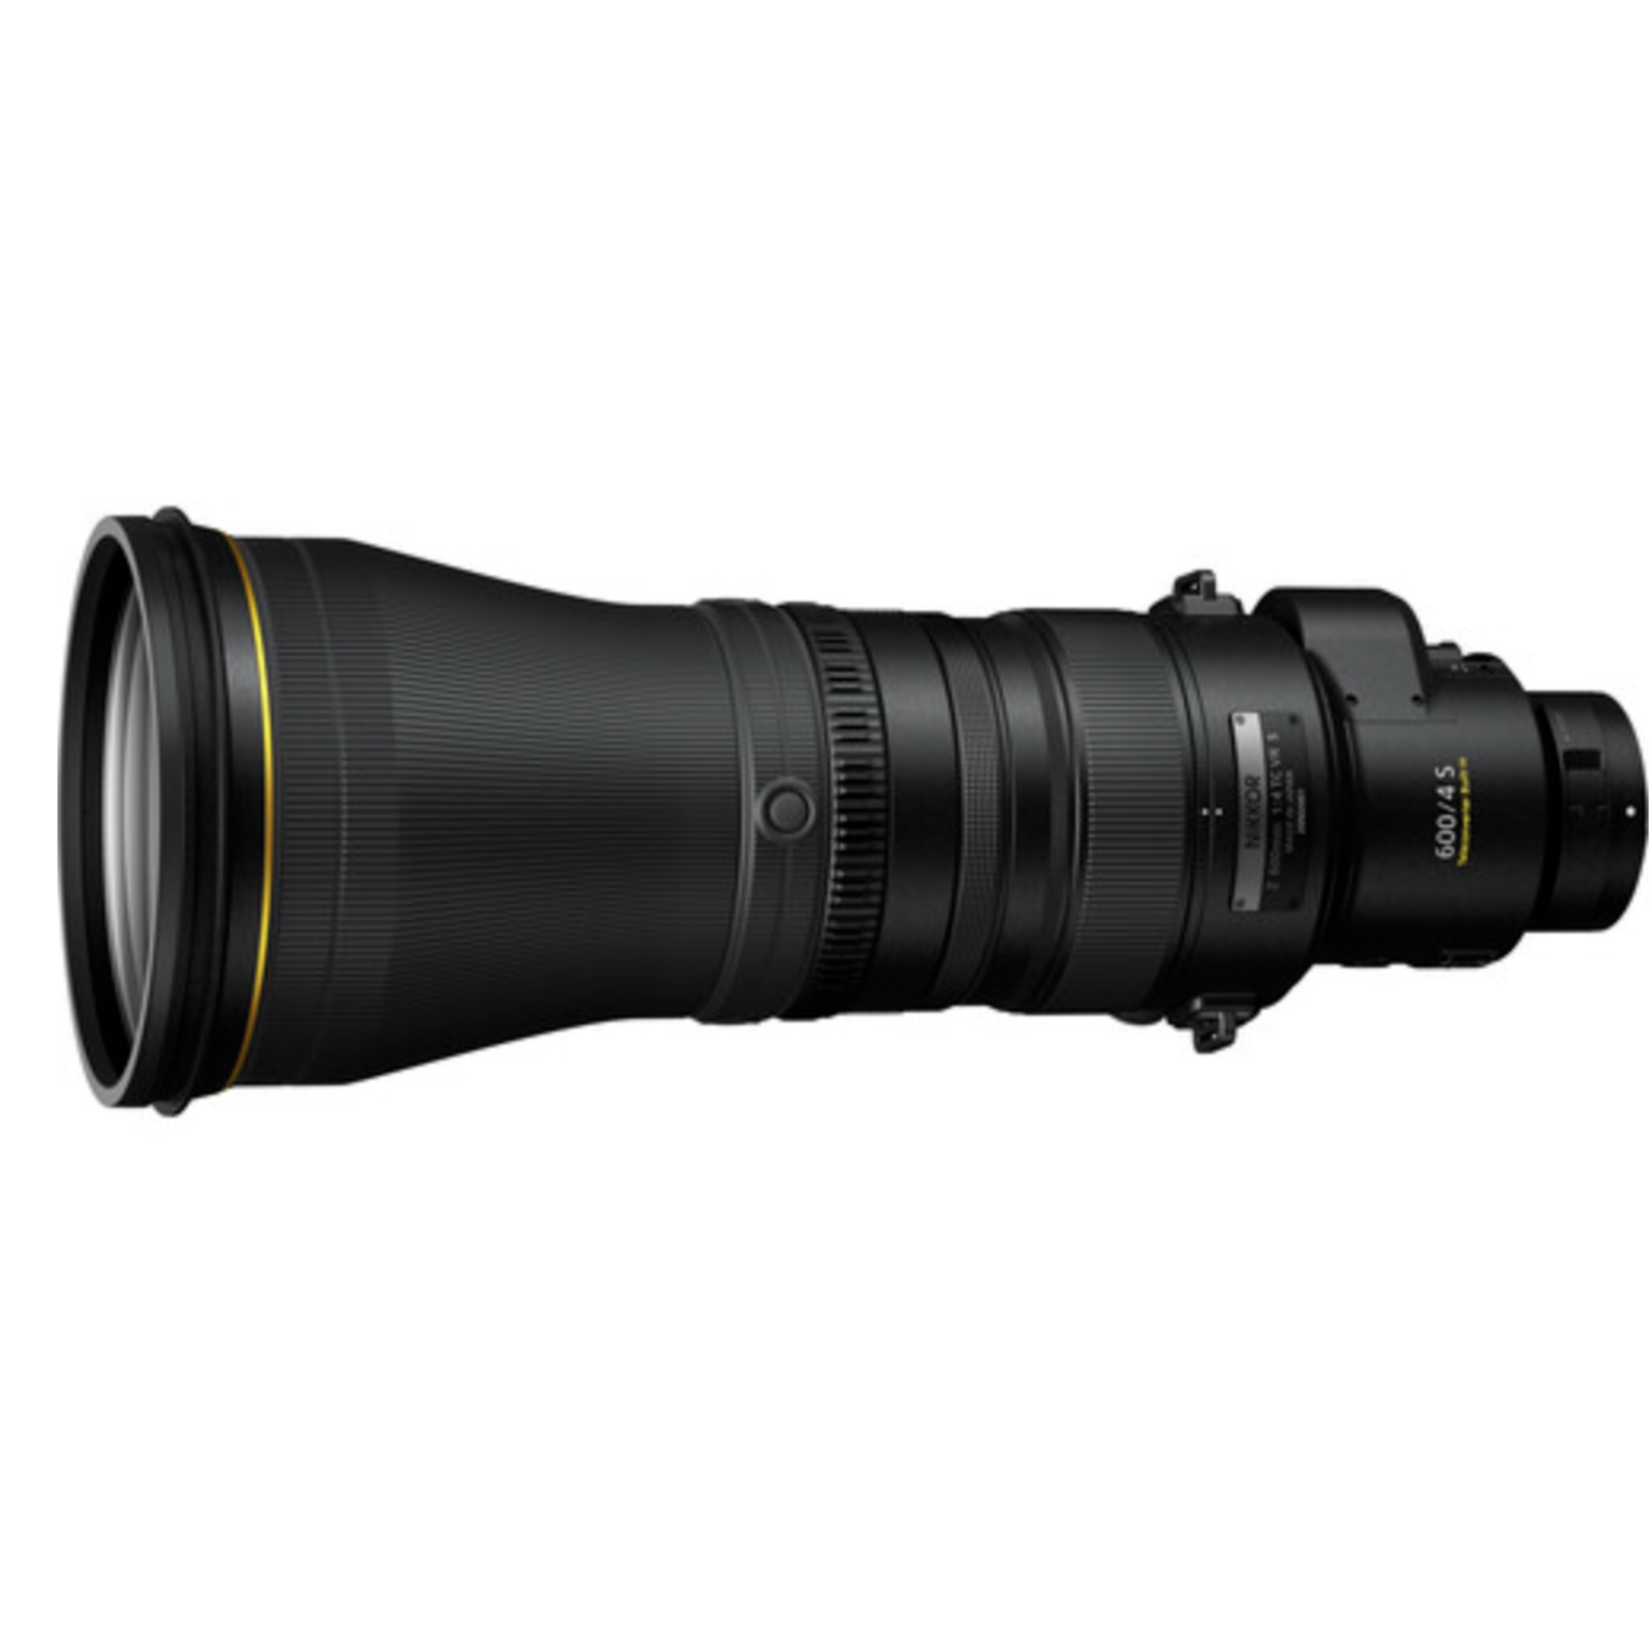 Nikon Nikon NIKKOR Z 600mm f/4 TC VR S Lens